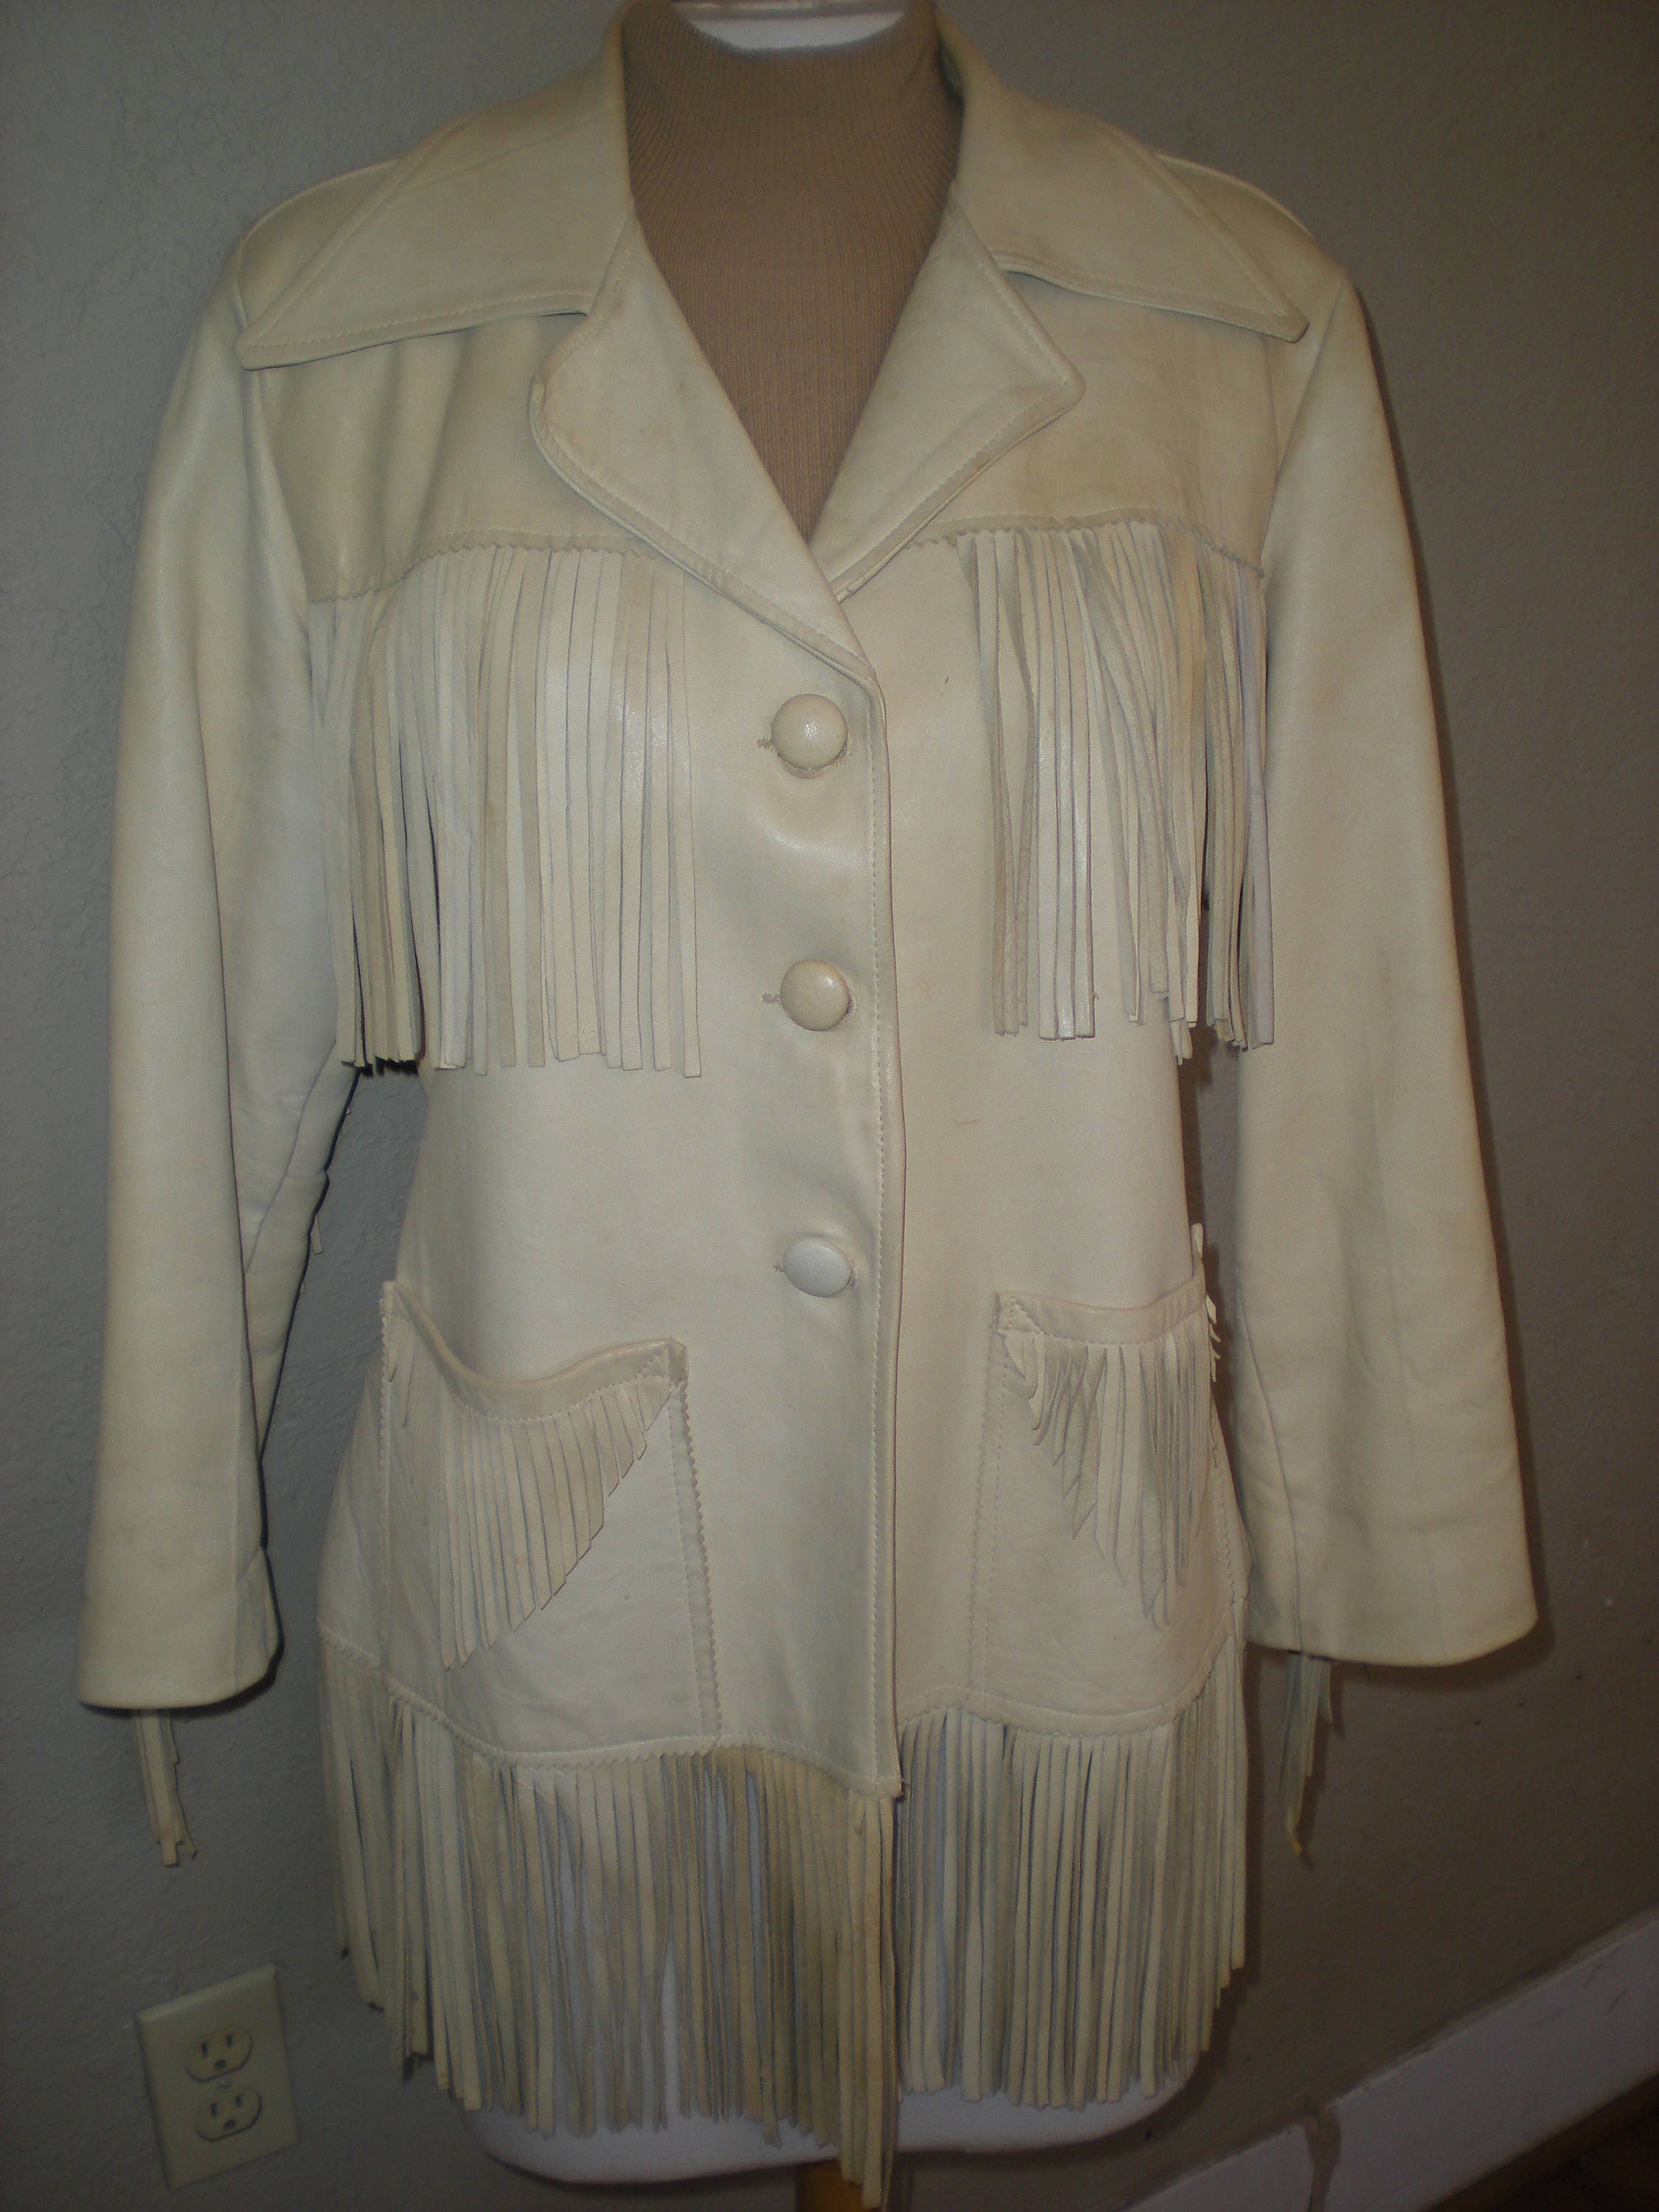 Vintage Women's Pioneer Wear Fringe Jacket Size 10 Soft Wheat colored ...